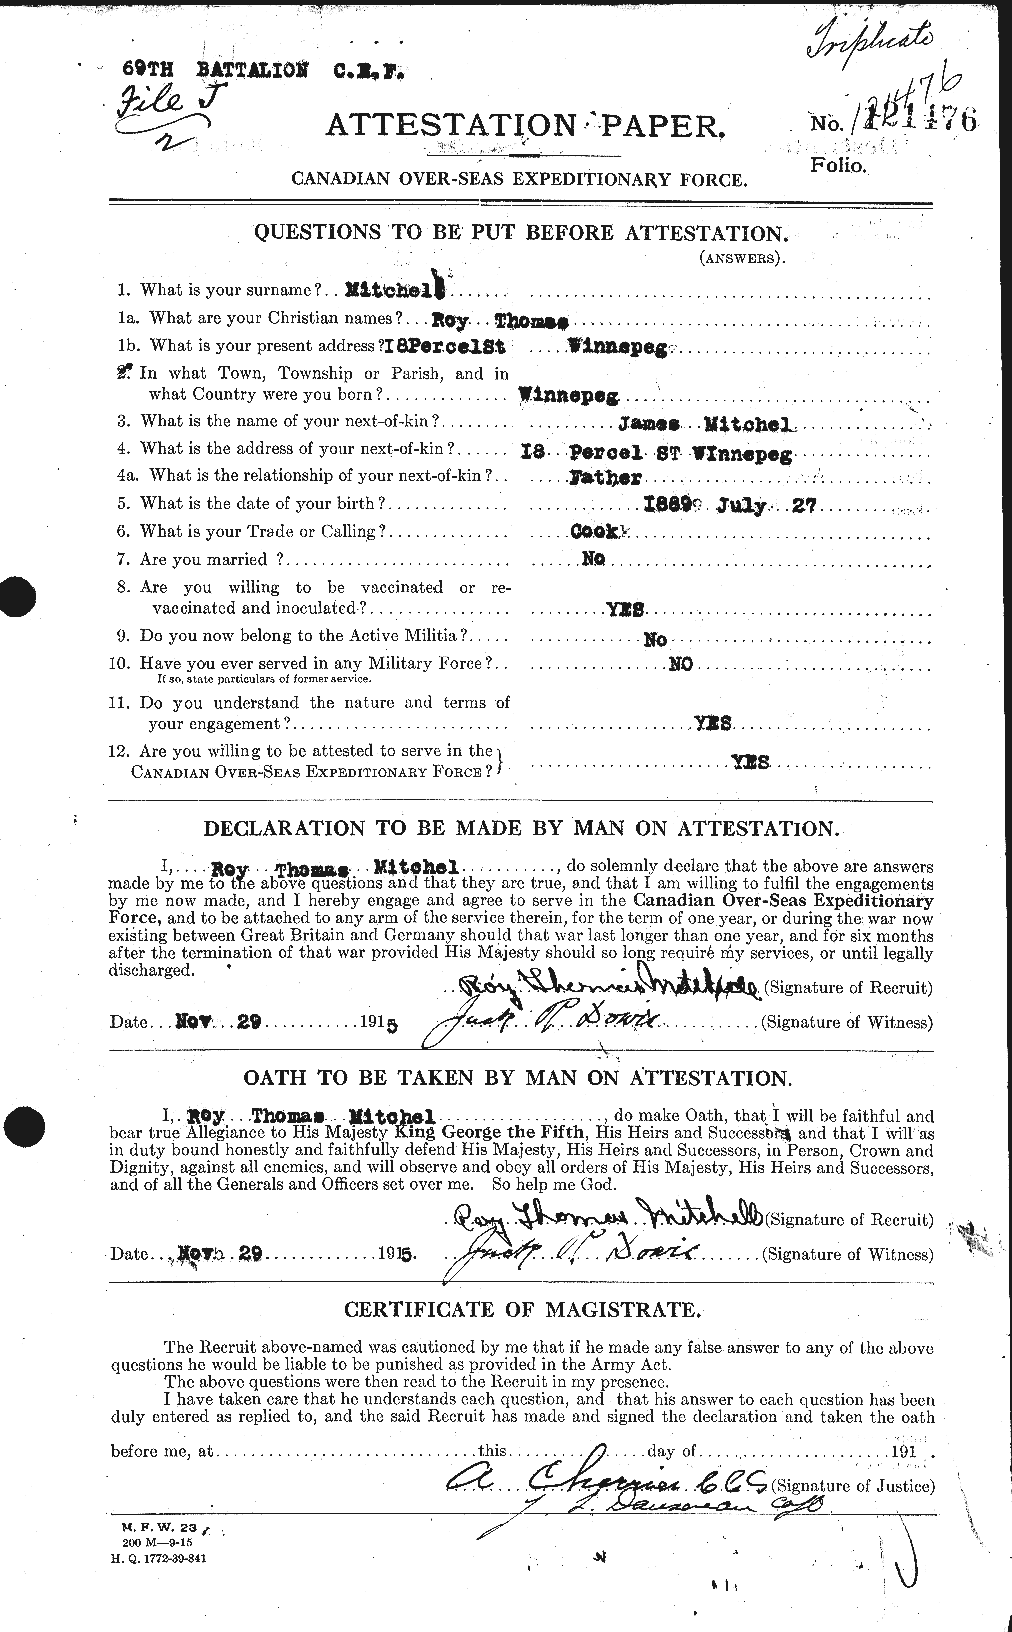 Dossiers du Personnel de la Première Guerre mondiale - CEC 499885a